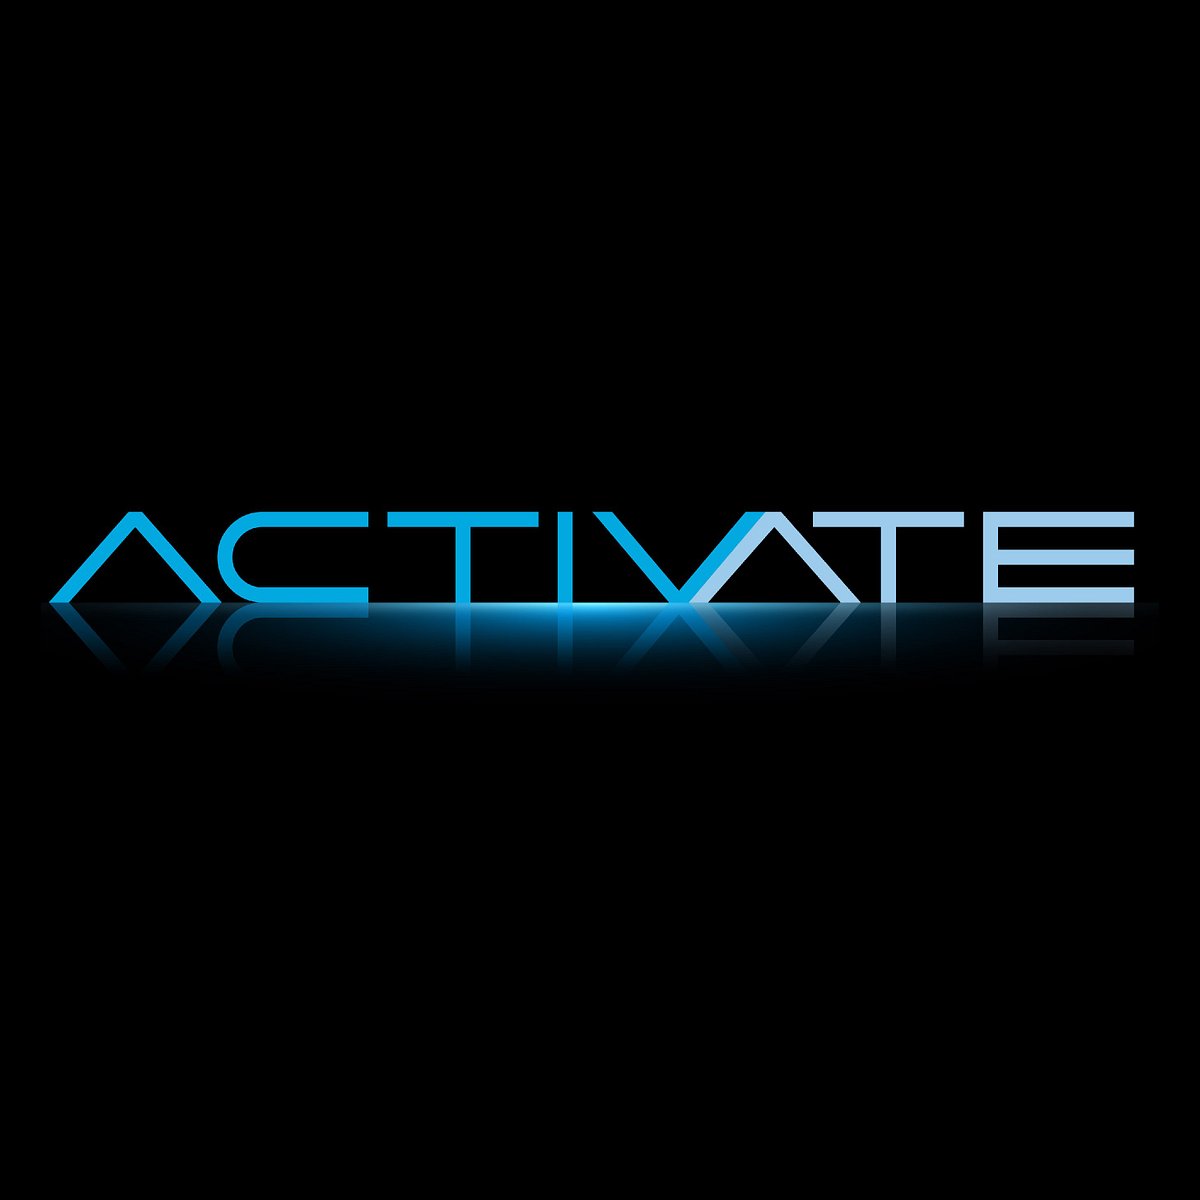 /activate 